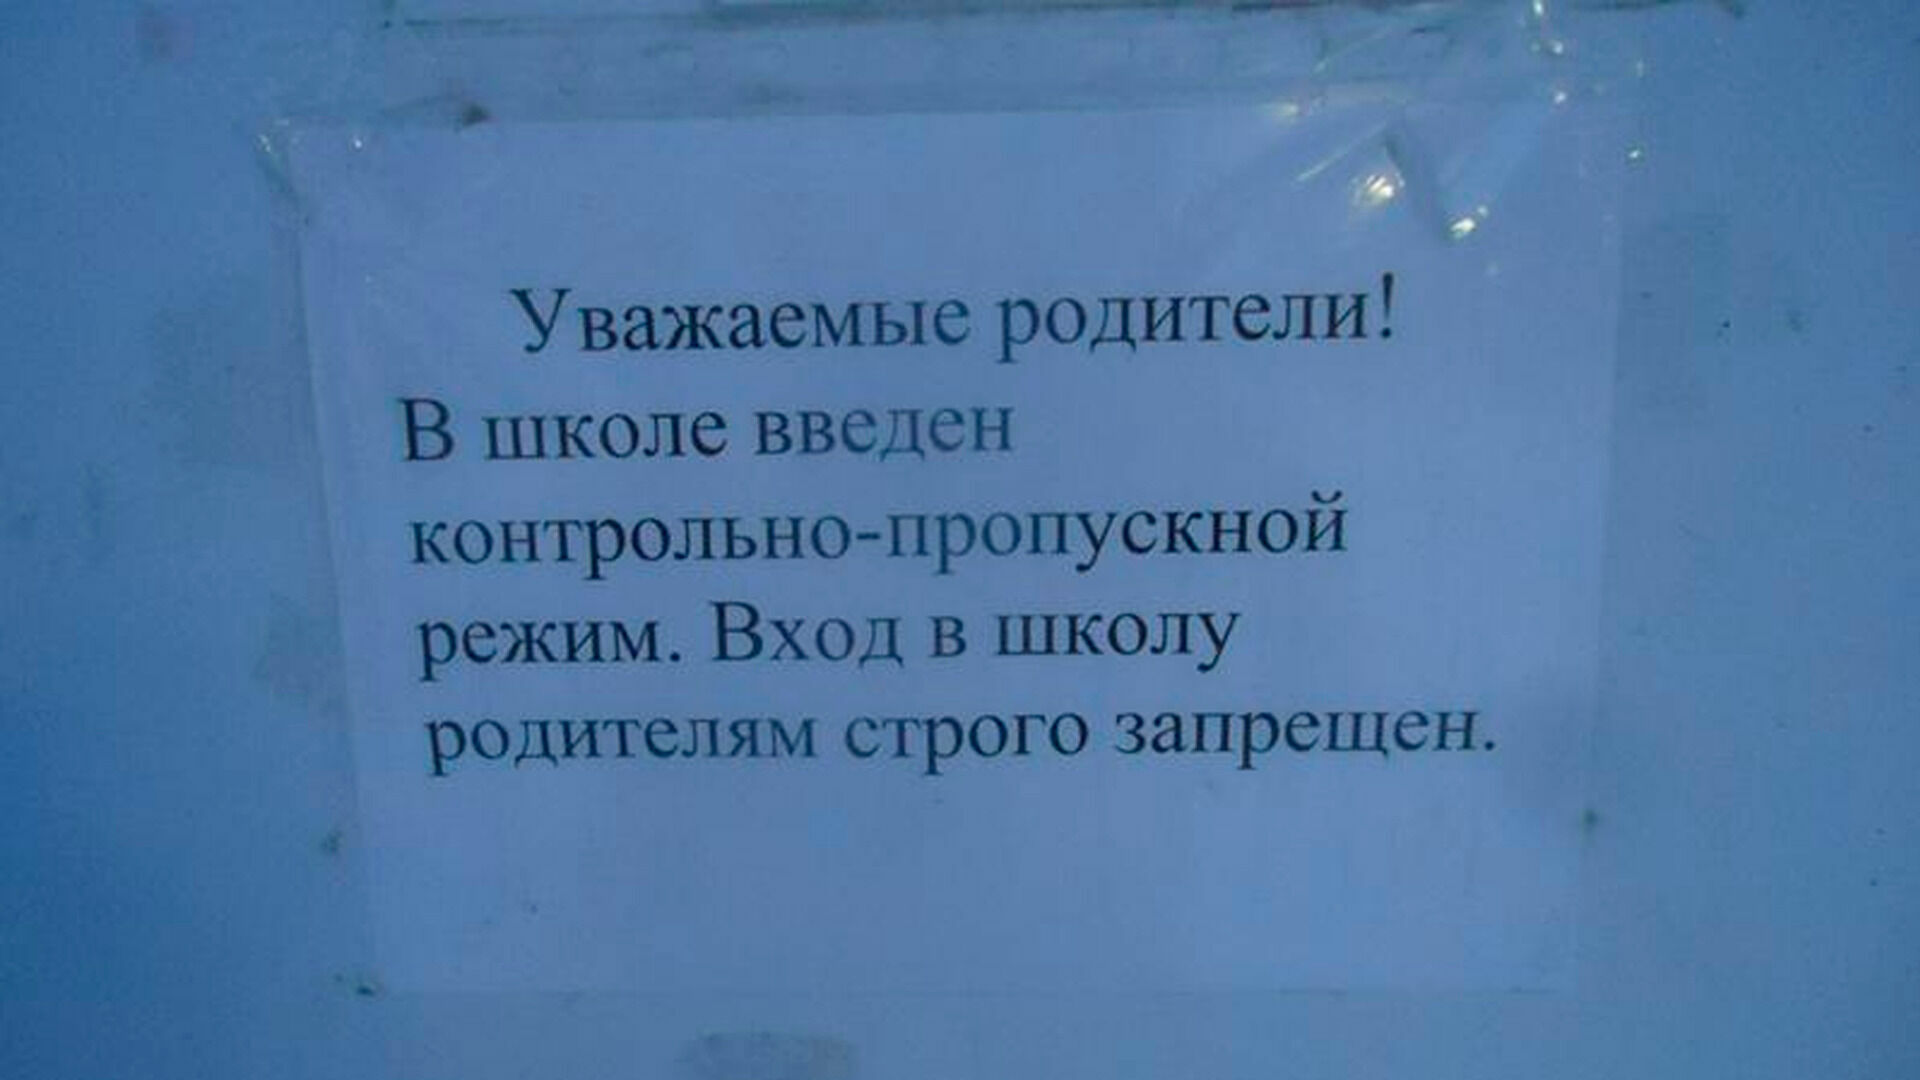 Похожие объявления сейчас можно увидеть в школах по всей России.